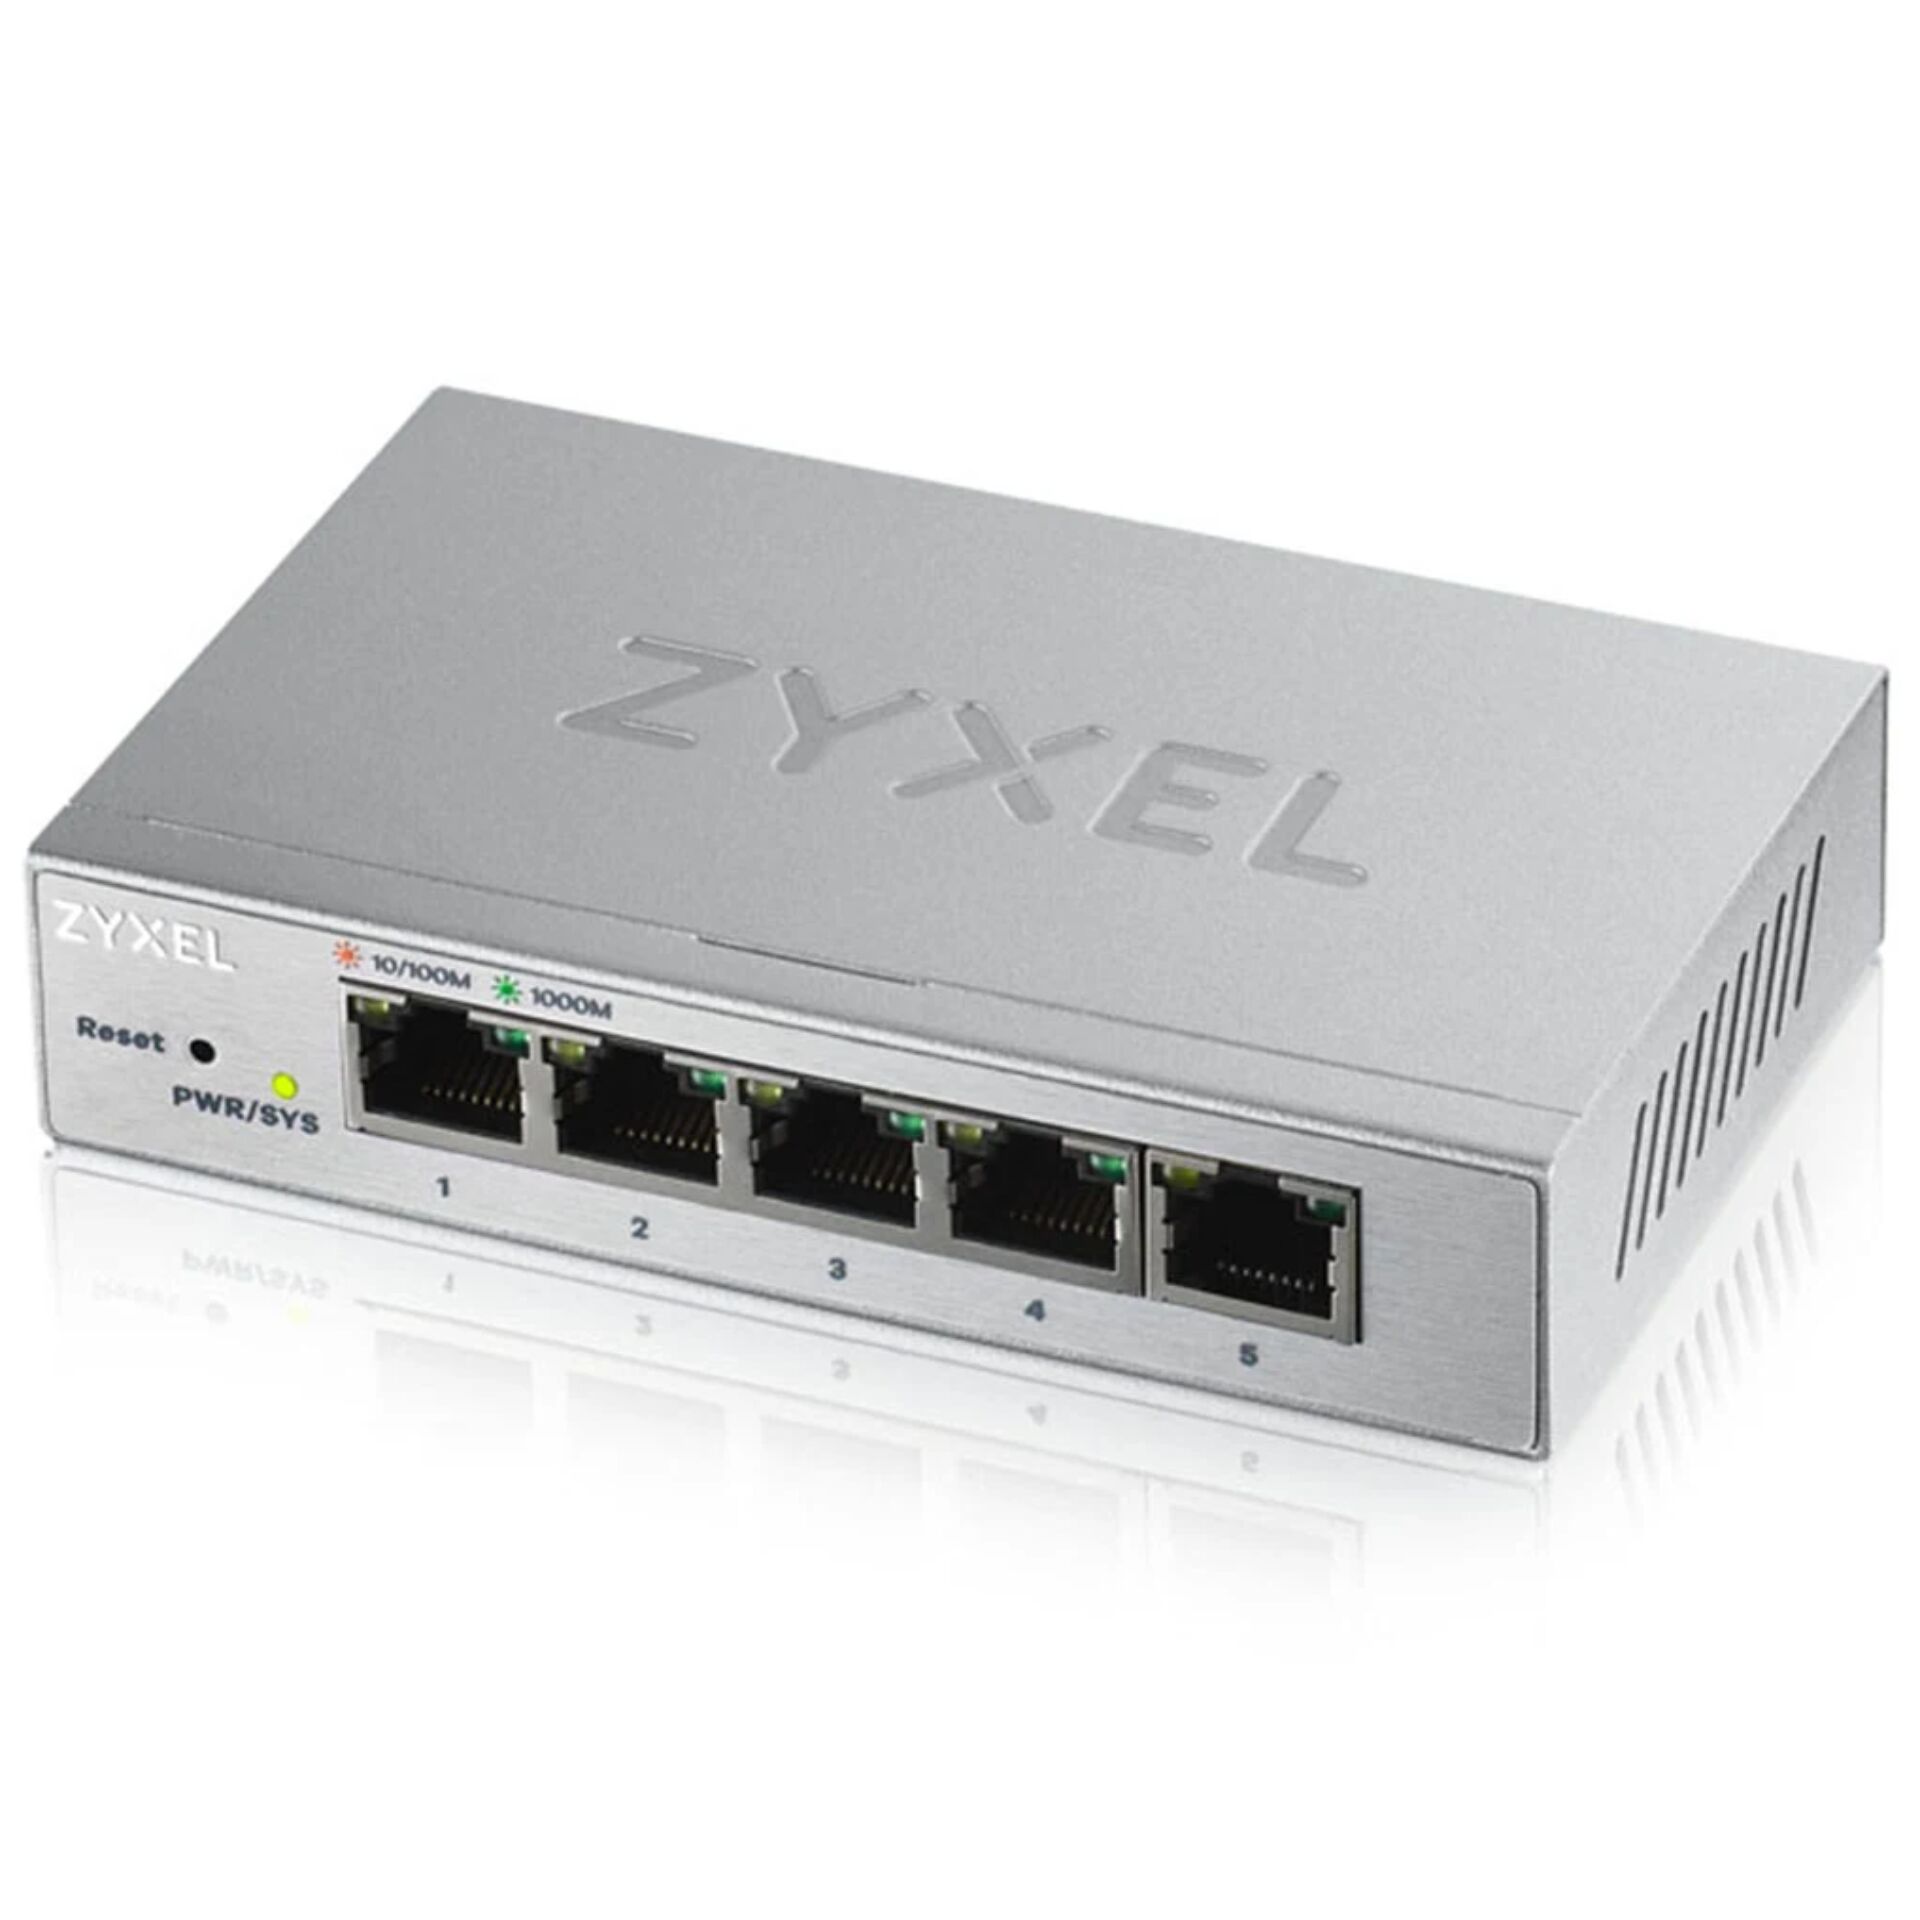 Zyxel GS1200-5 5-Port Switch